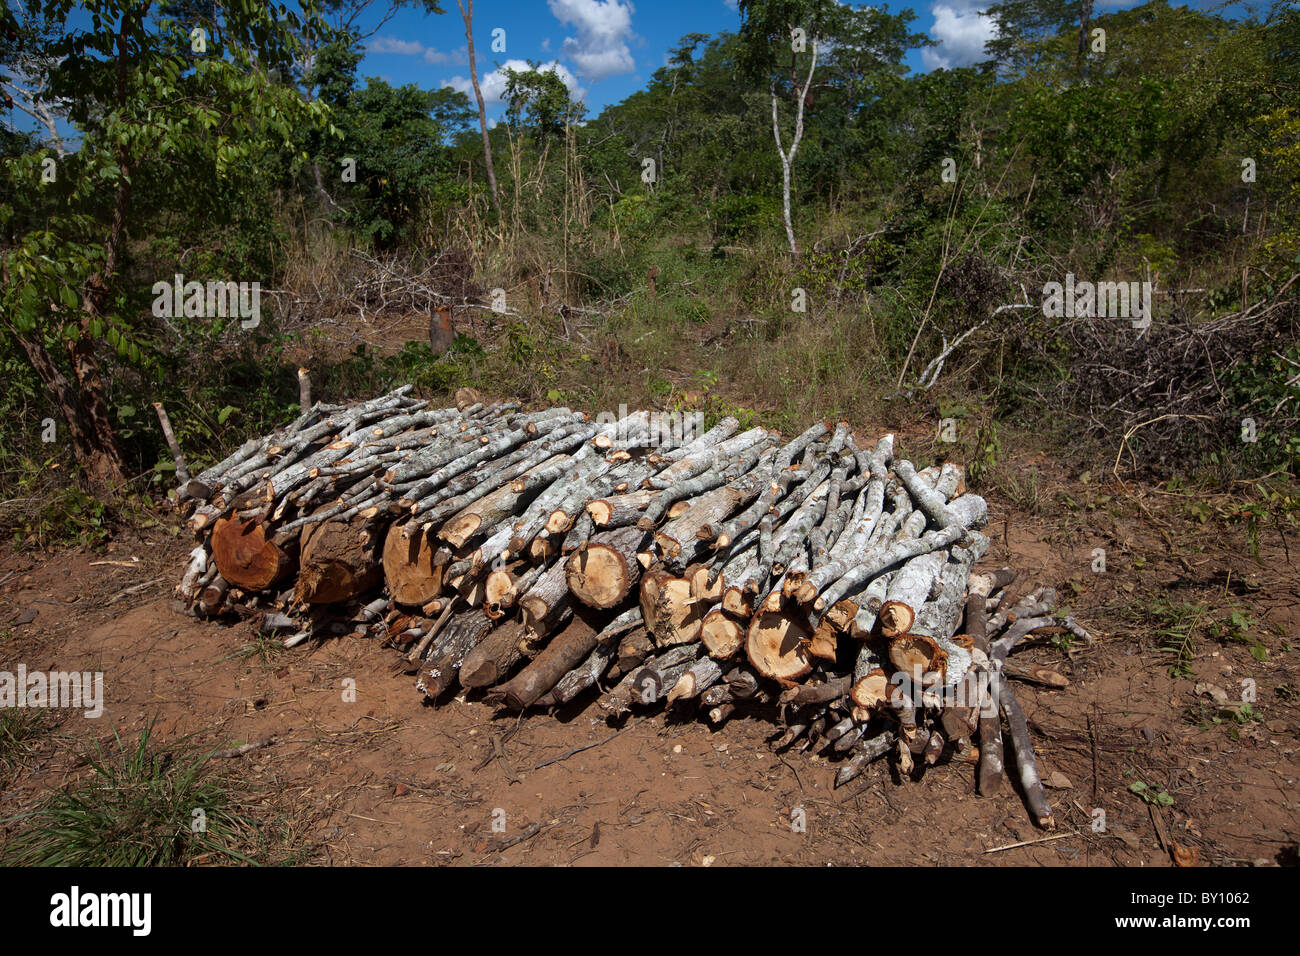 La réserve forestière de MUECATE, près de Nampula, MOZAMBIQUE, Mai 2010 : Bois coupé pour le bois de chauffage et charbon de bois à l'intérieur de la réserve forestière. Banque D'Images